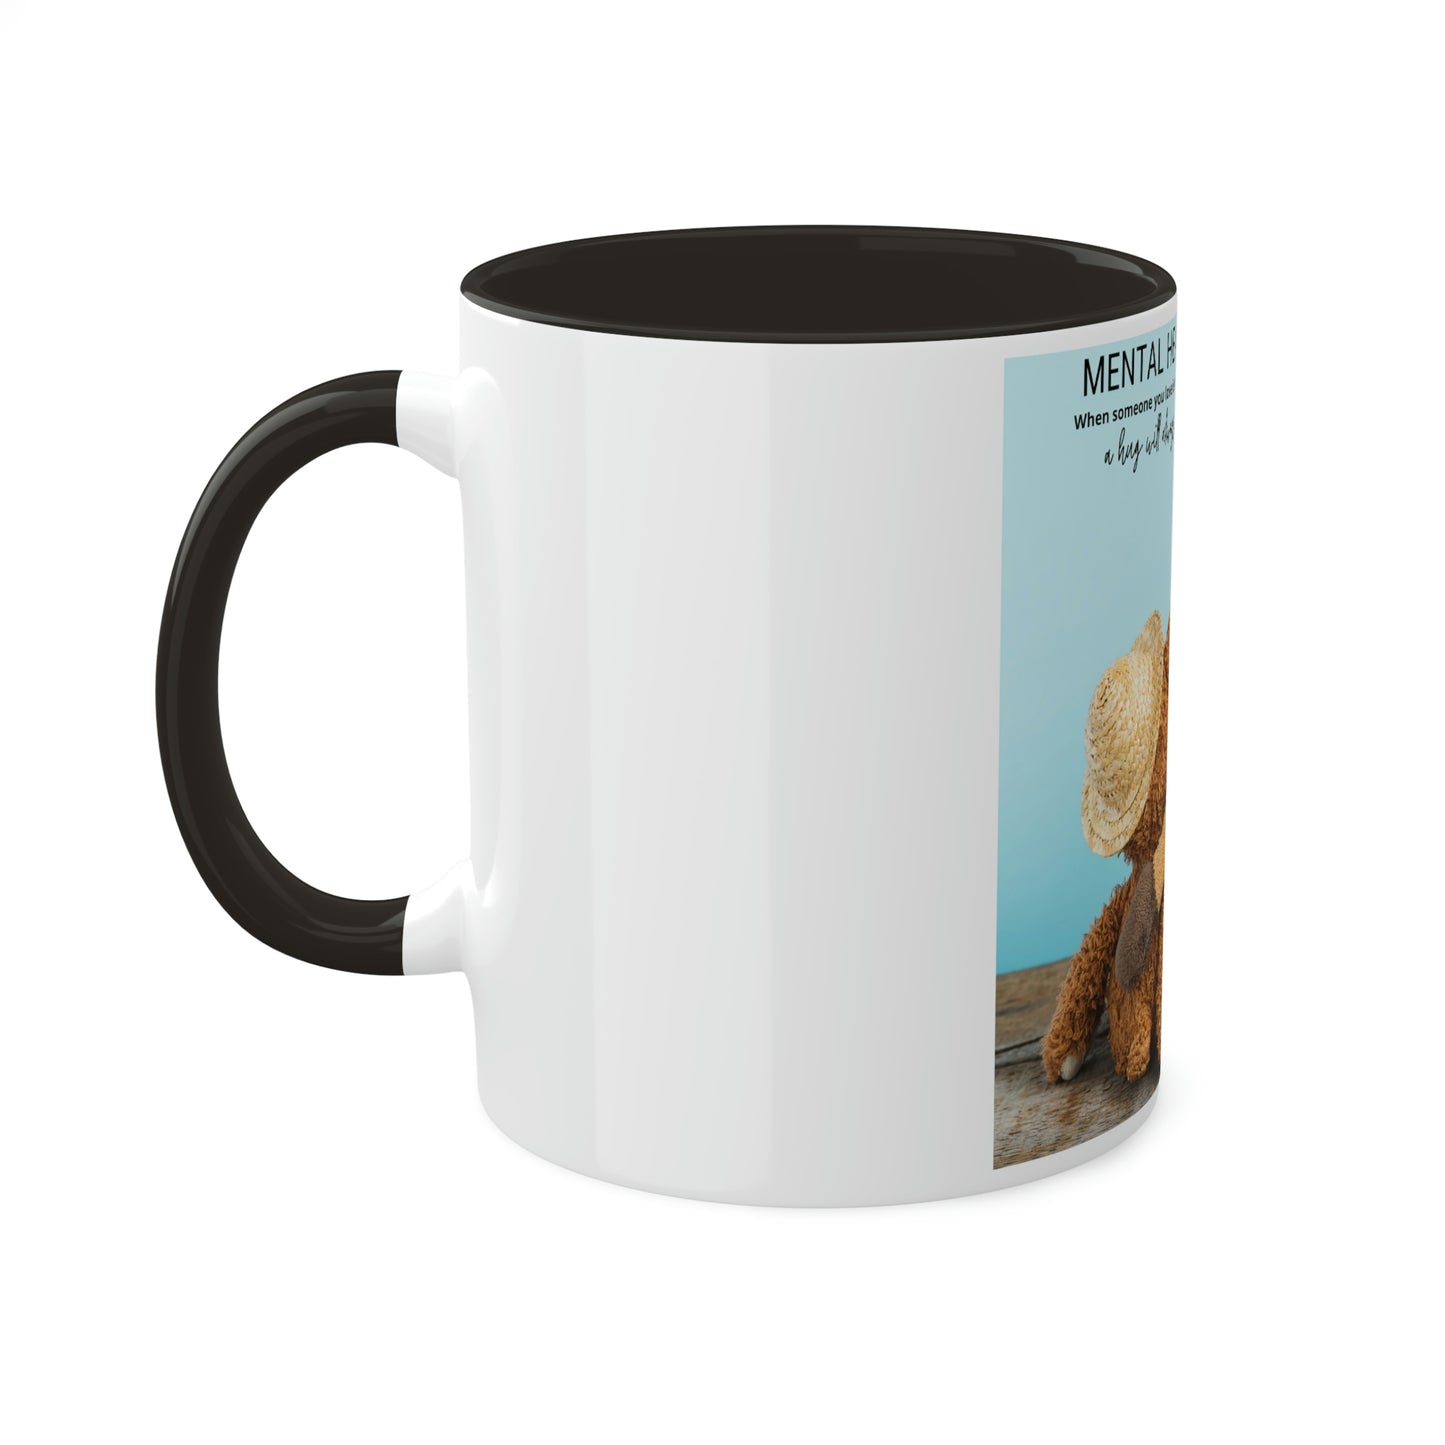 Give A Hug Mental Health Awareness -Two Tone Coffee Mug, 11oz